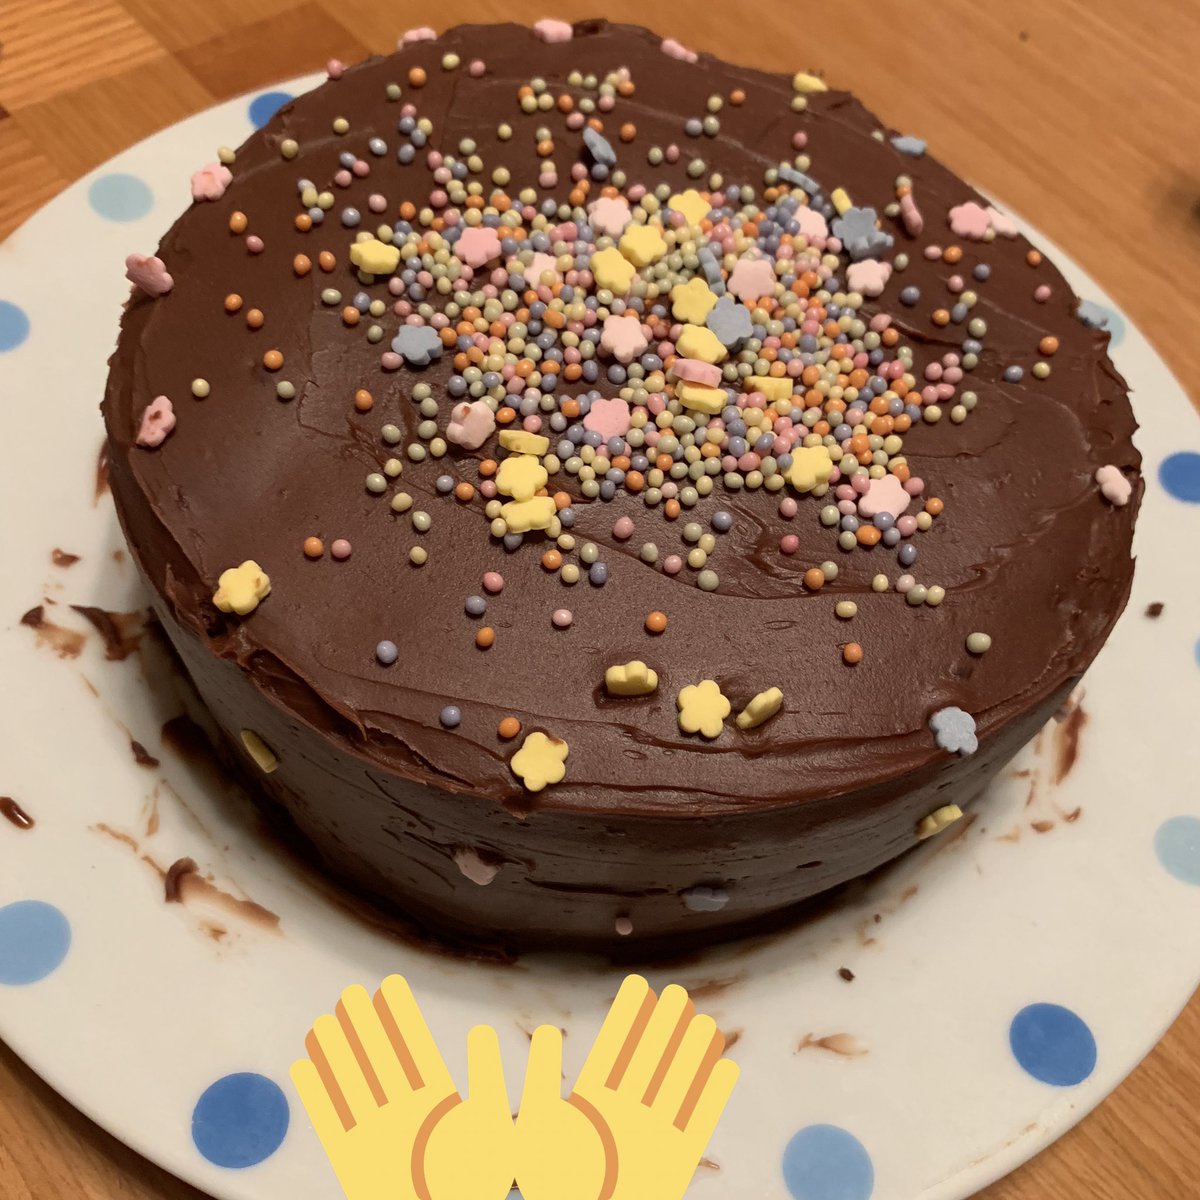 בטוויטר チョコレートケーキを作りまして りんちゃんお手伝い飾りつけありがとう 普段あんまりケーキ食べないりんさんがバクバク食べてくれてかーちゃん嬉しい